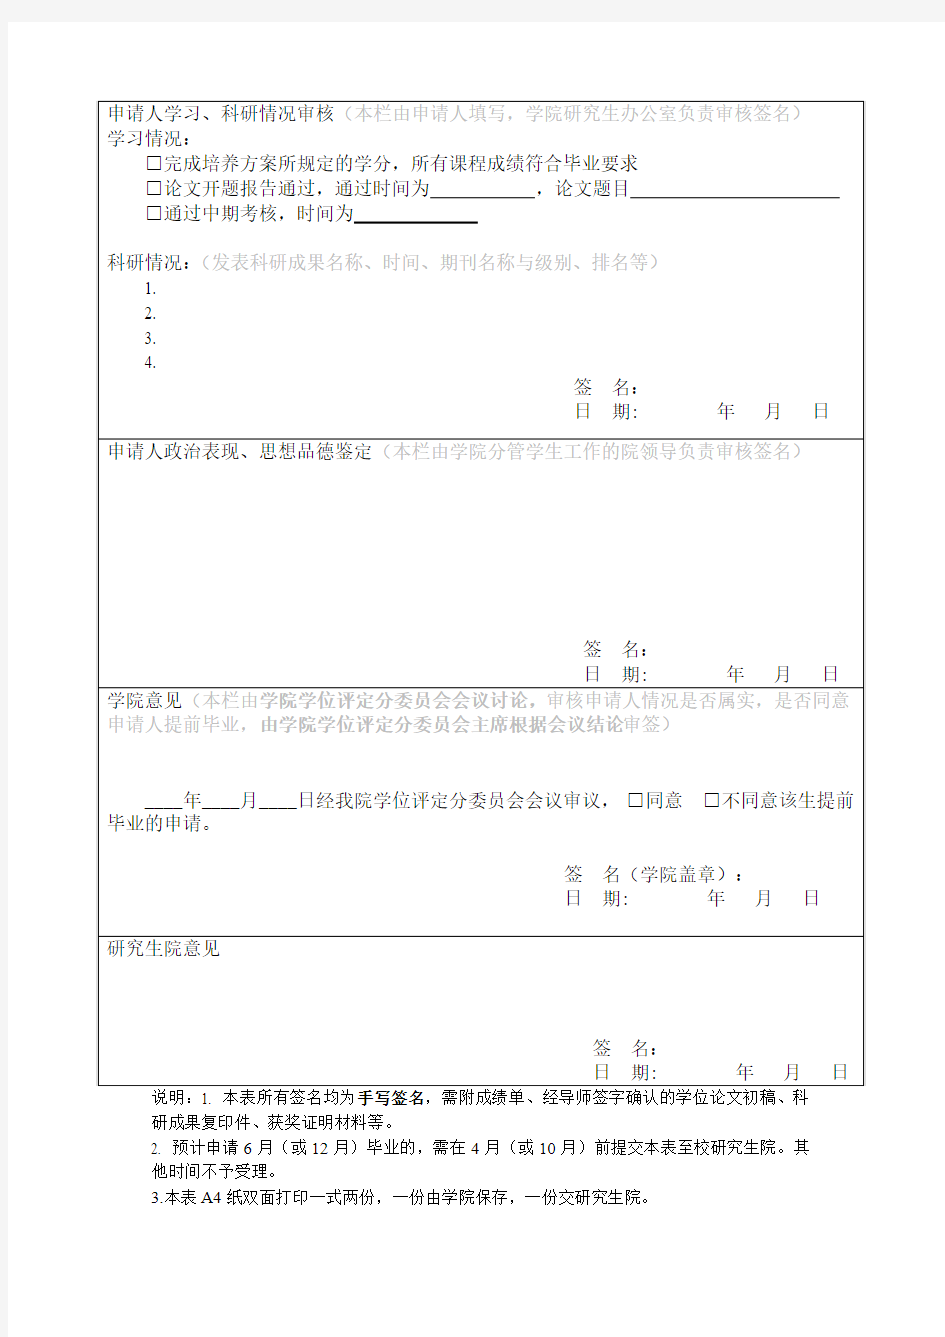 广西大学全日制研究生提前毕业申请表(201904版)